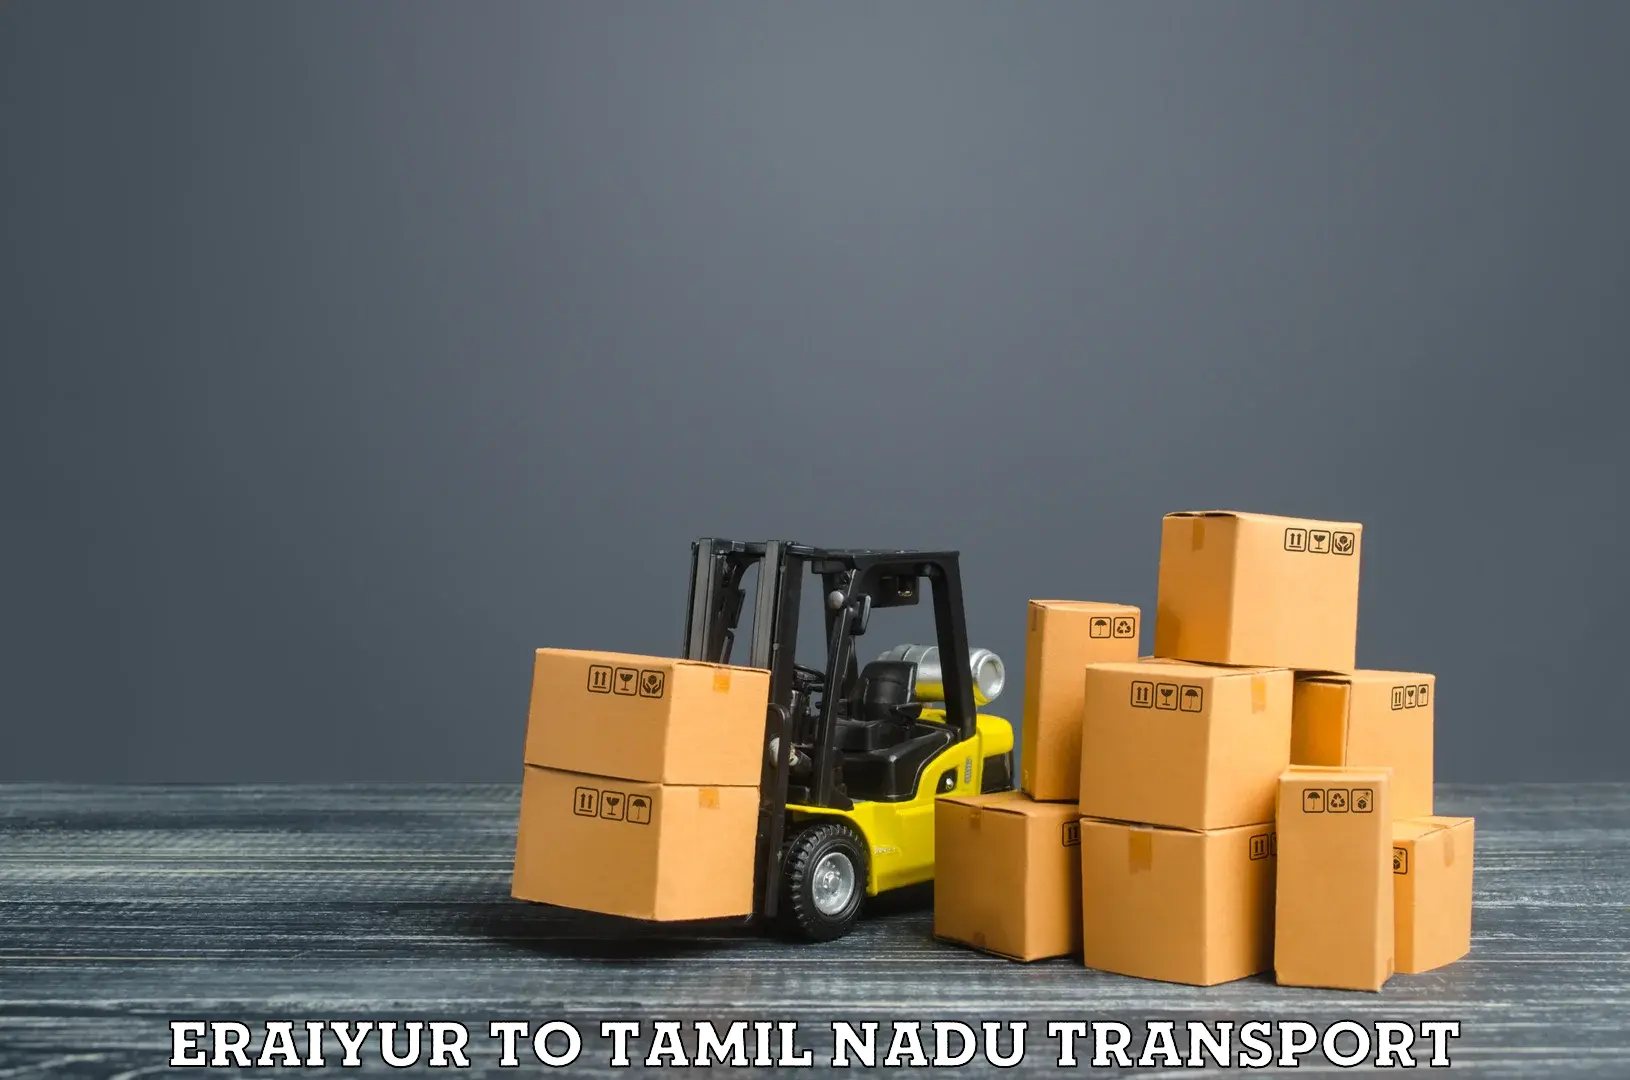 Daily transport service Eraiyur to Tiruturaipundi